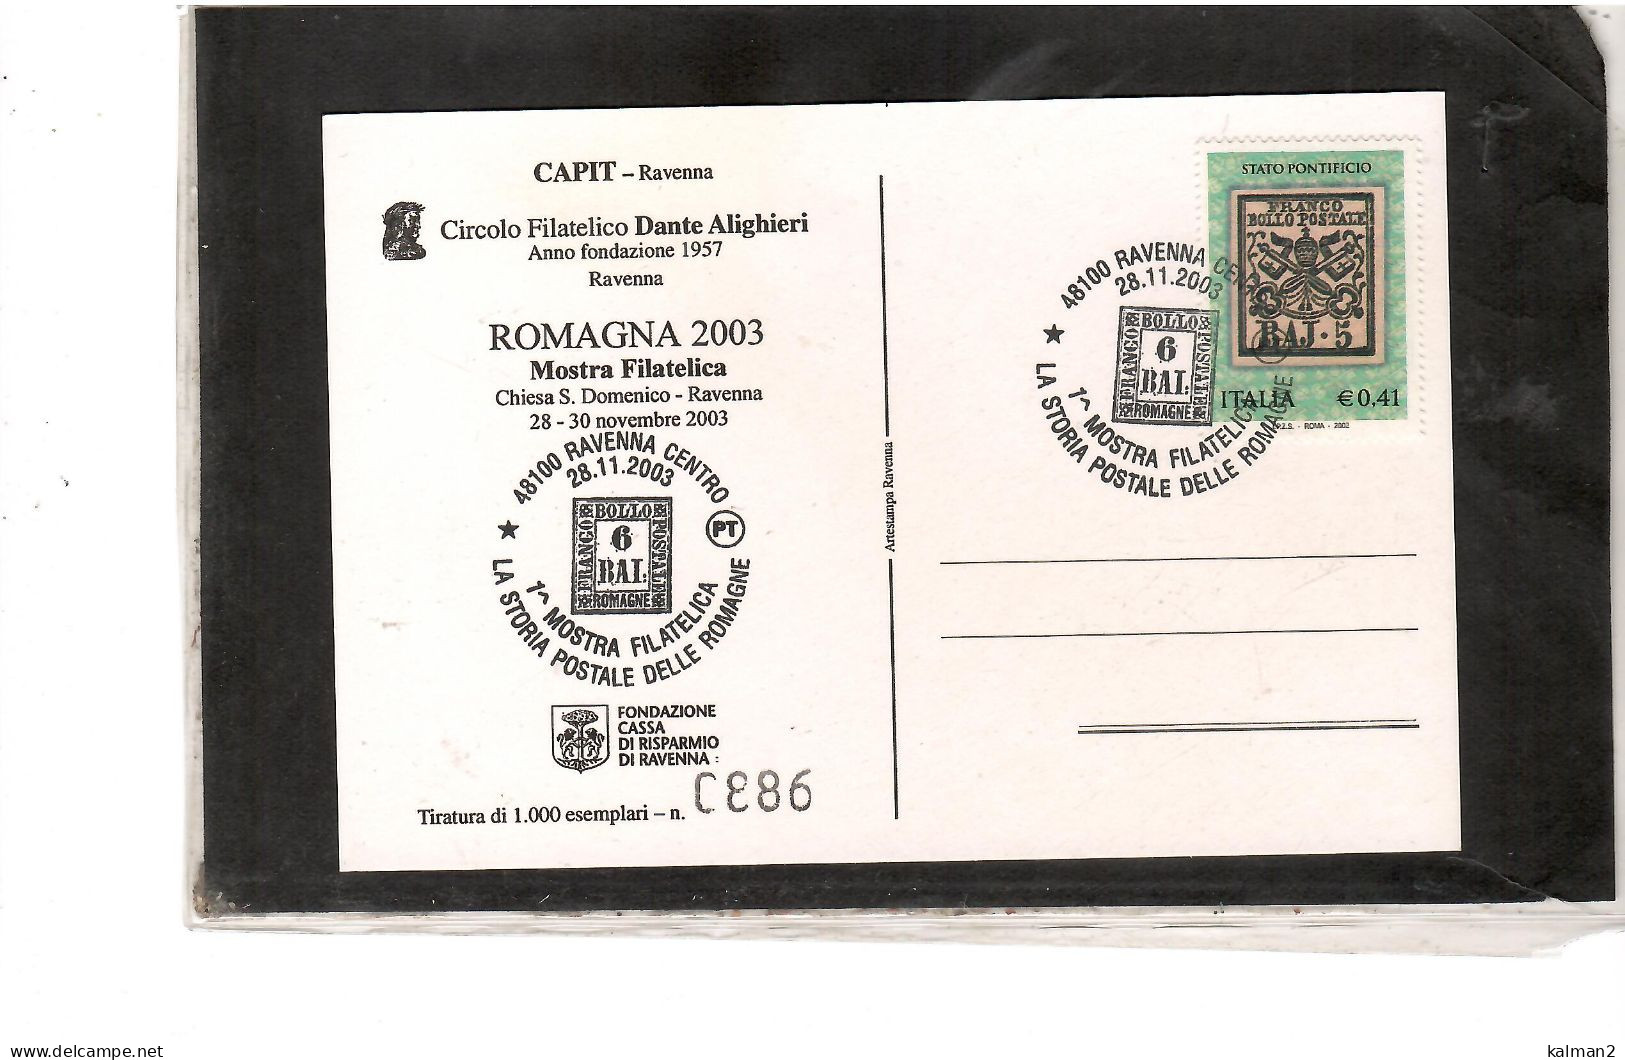 TEM20098 - RAVENNA  28.11.2003   /   GIORNATA DELLA FILATELIA - MOSTRA FILATELICA ROMAGNA 2003 - Briefmarkenausstellungen